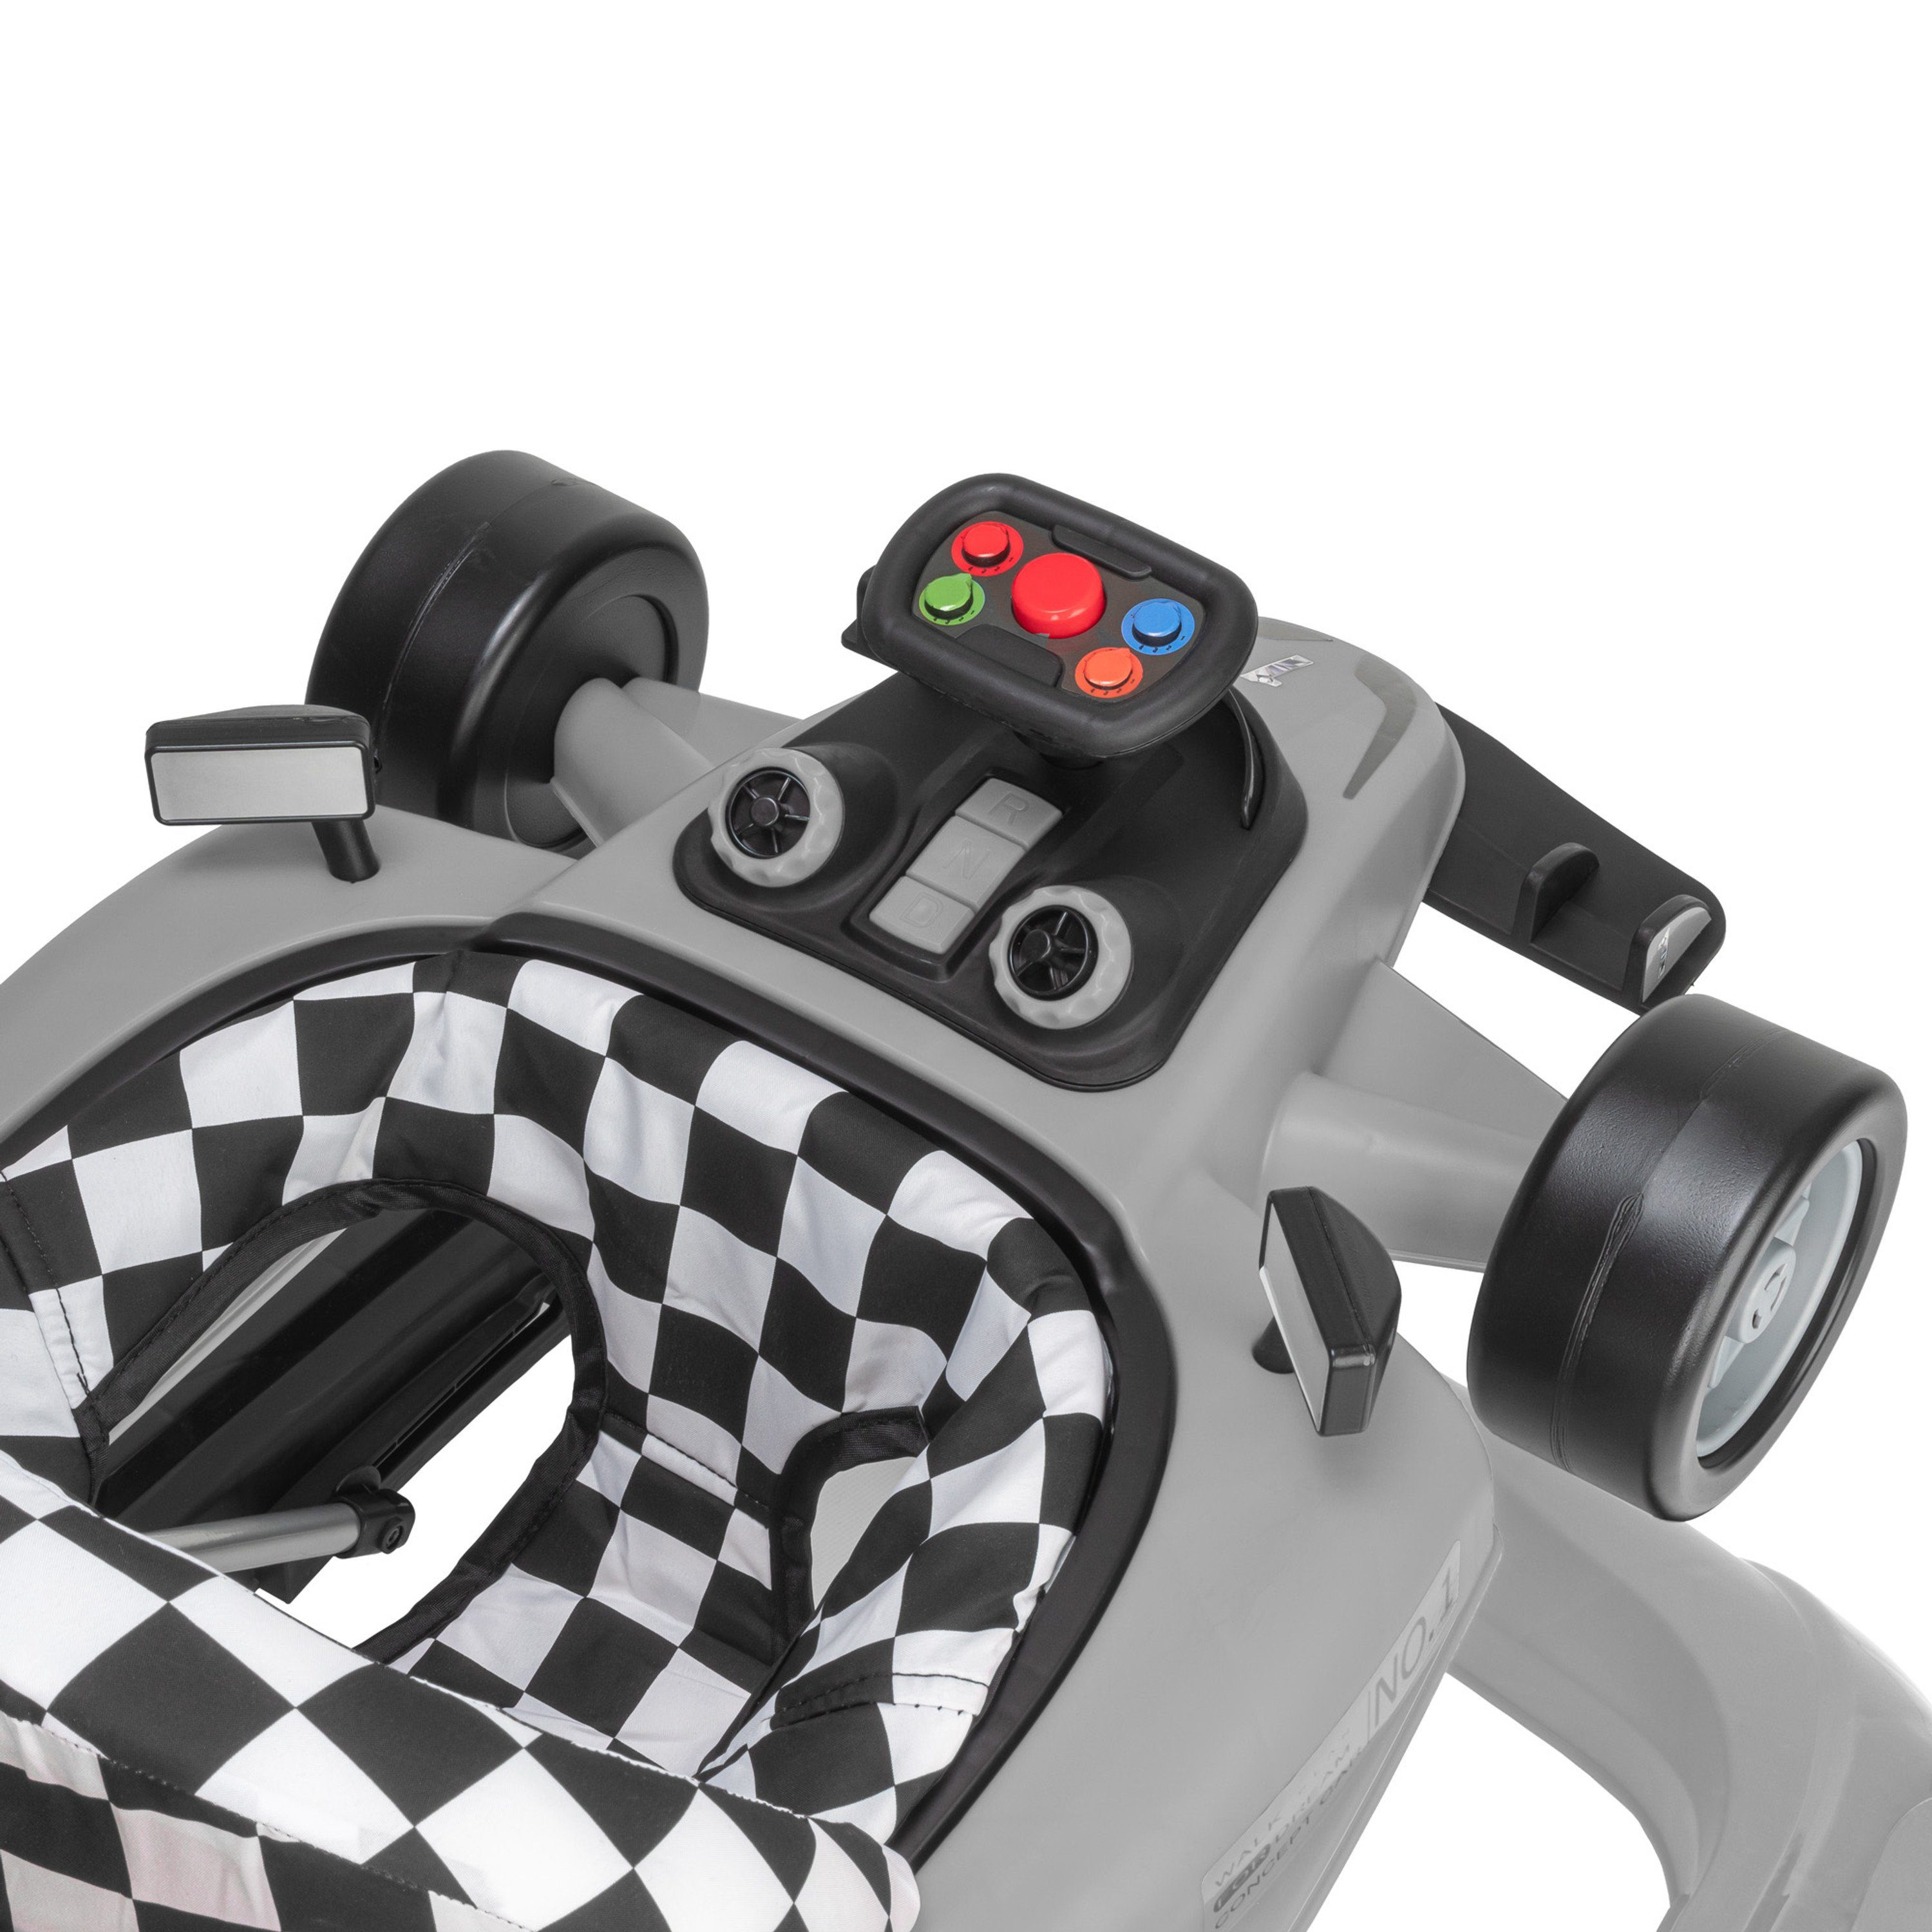 Soundeffekten Laufwagen Babywalker Abnehmbarer Lauflernwagen Little - Grau, mit ib style Lauflernhilfe Speedster